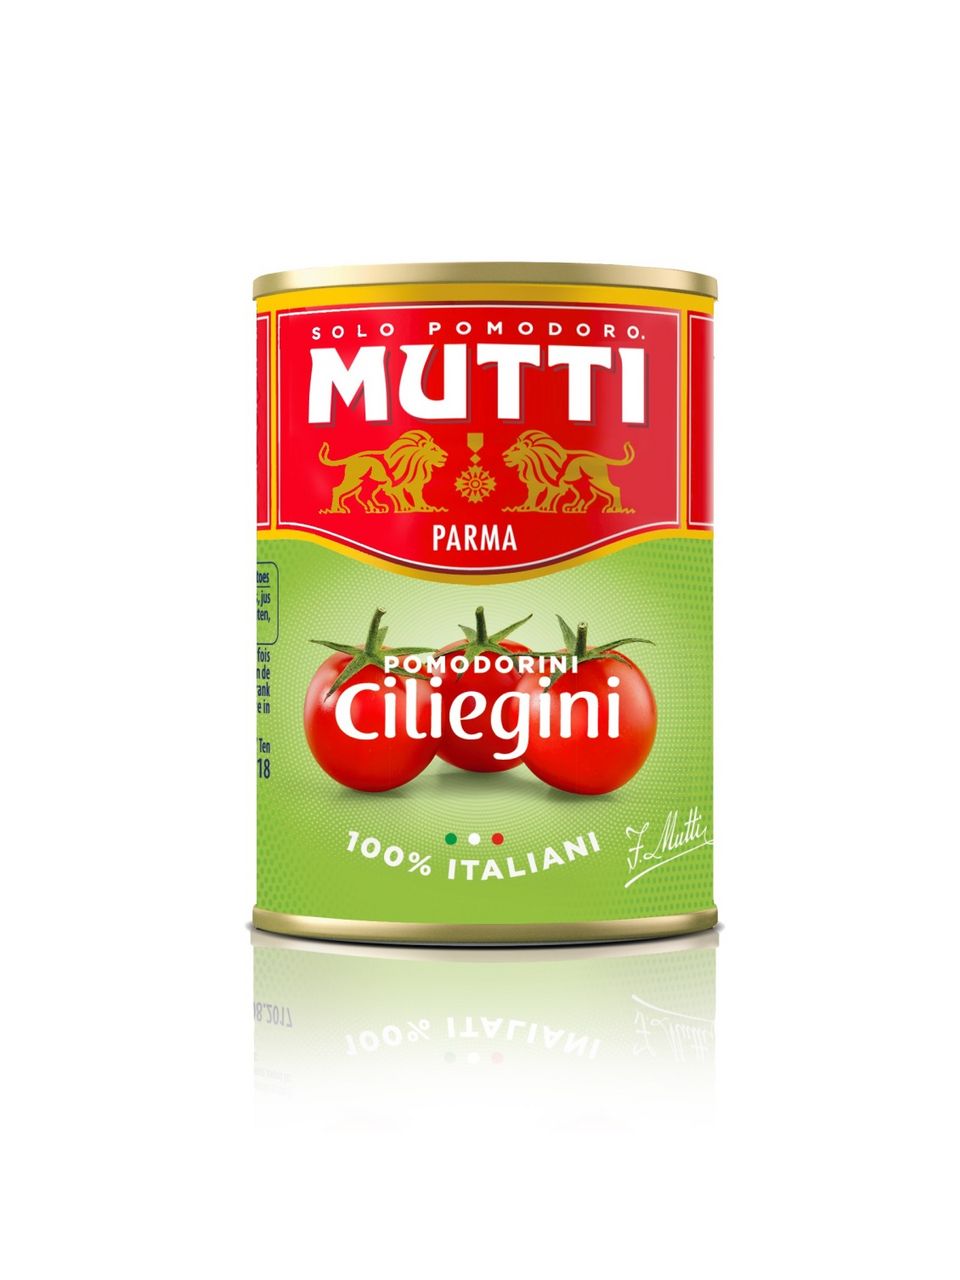 mutti томатный соус для пиццы ароматизированный 400 г купить фото 95